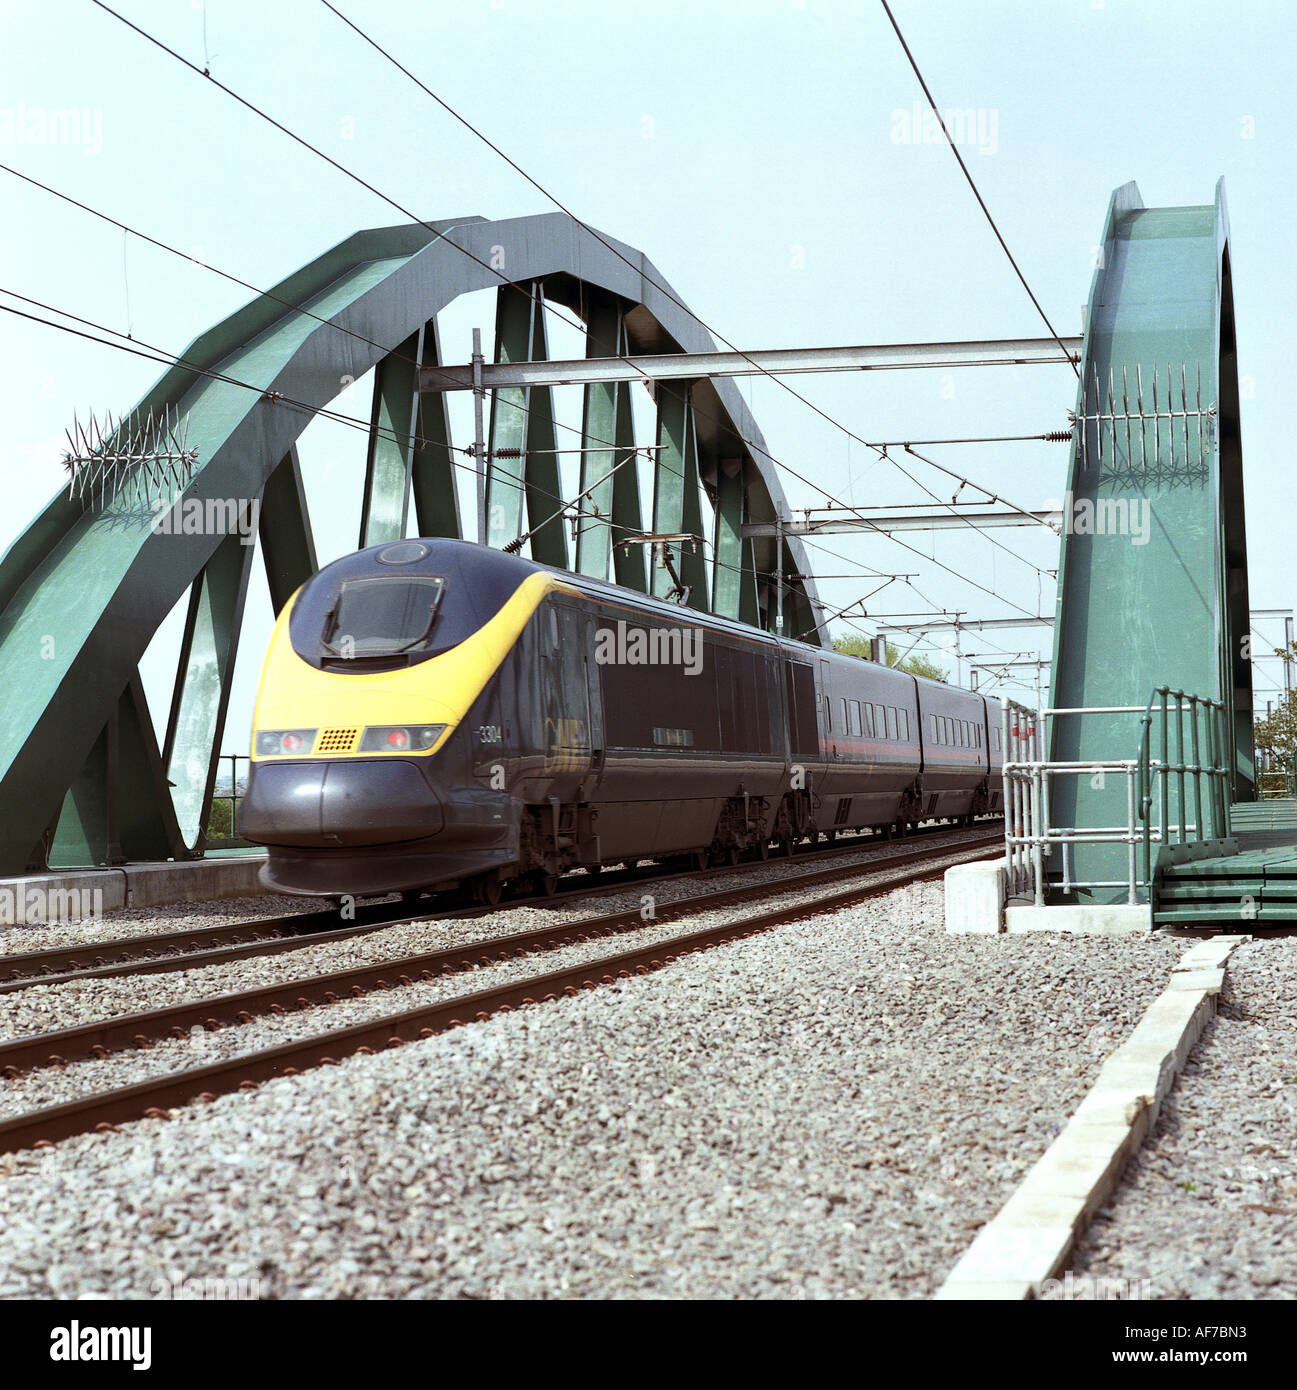 Passage de trains électriques Dyke Newark pont de chemin de fer. Liguria. L'Angleterre. UK. Banque D'Images